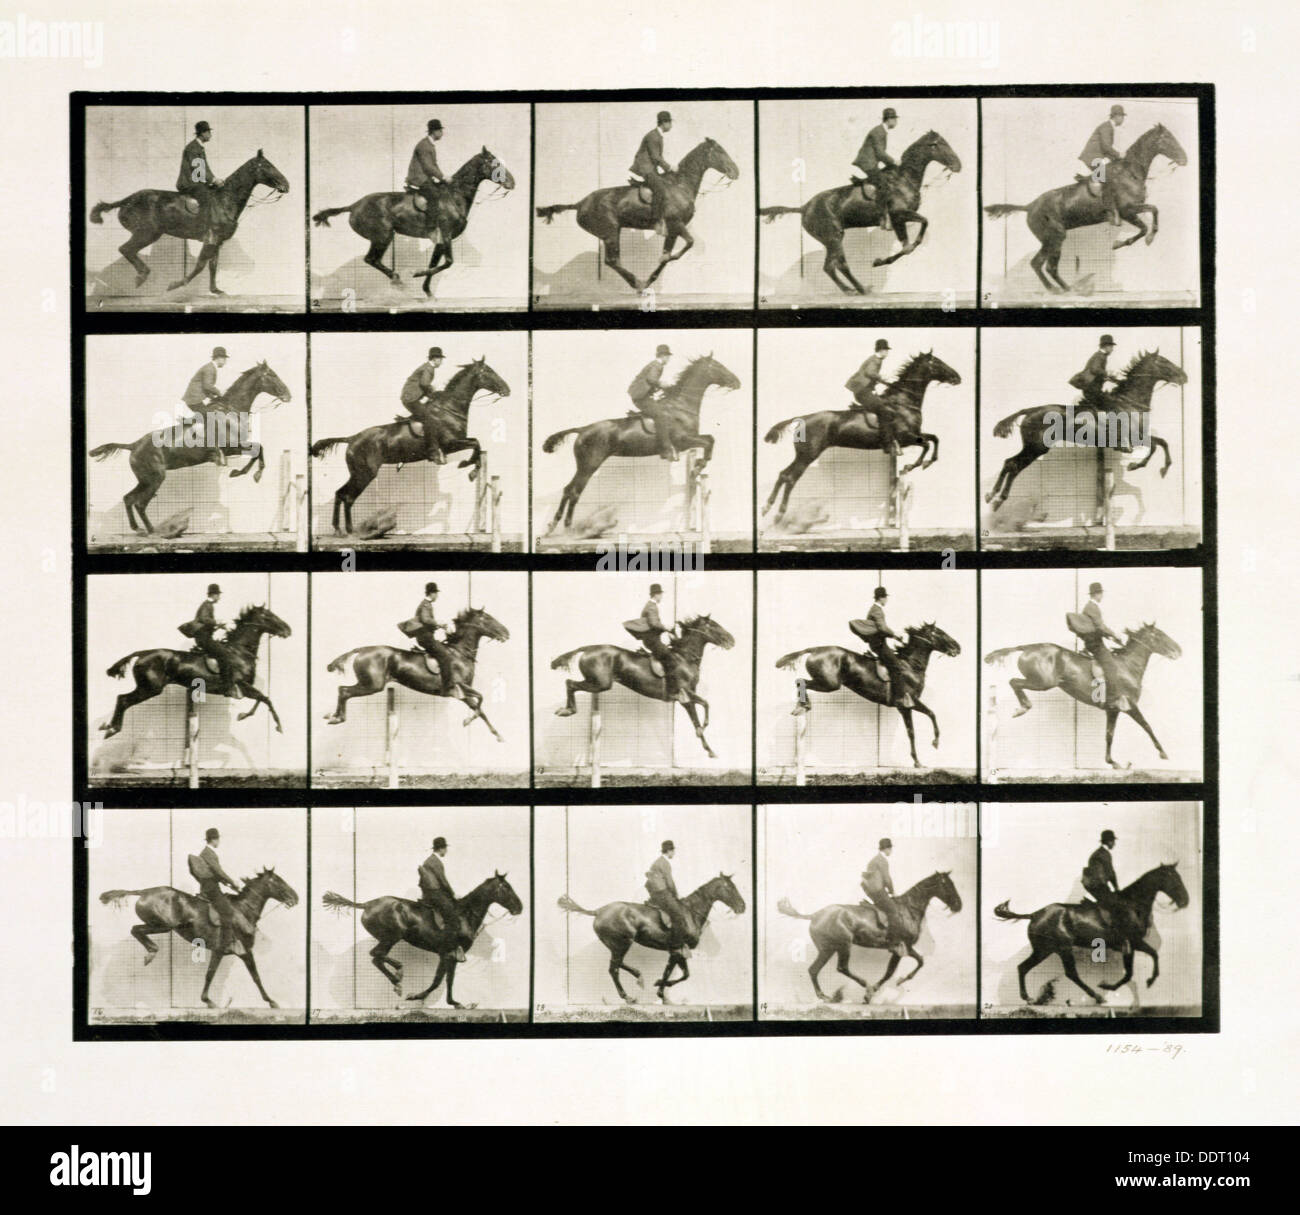 Uomo e cavallo saltando da un recinto, 1887 Artista: J Eadweard Muybridge Foto Stock